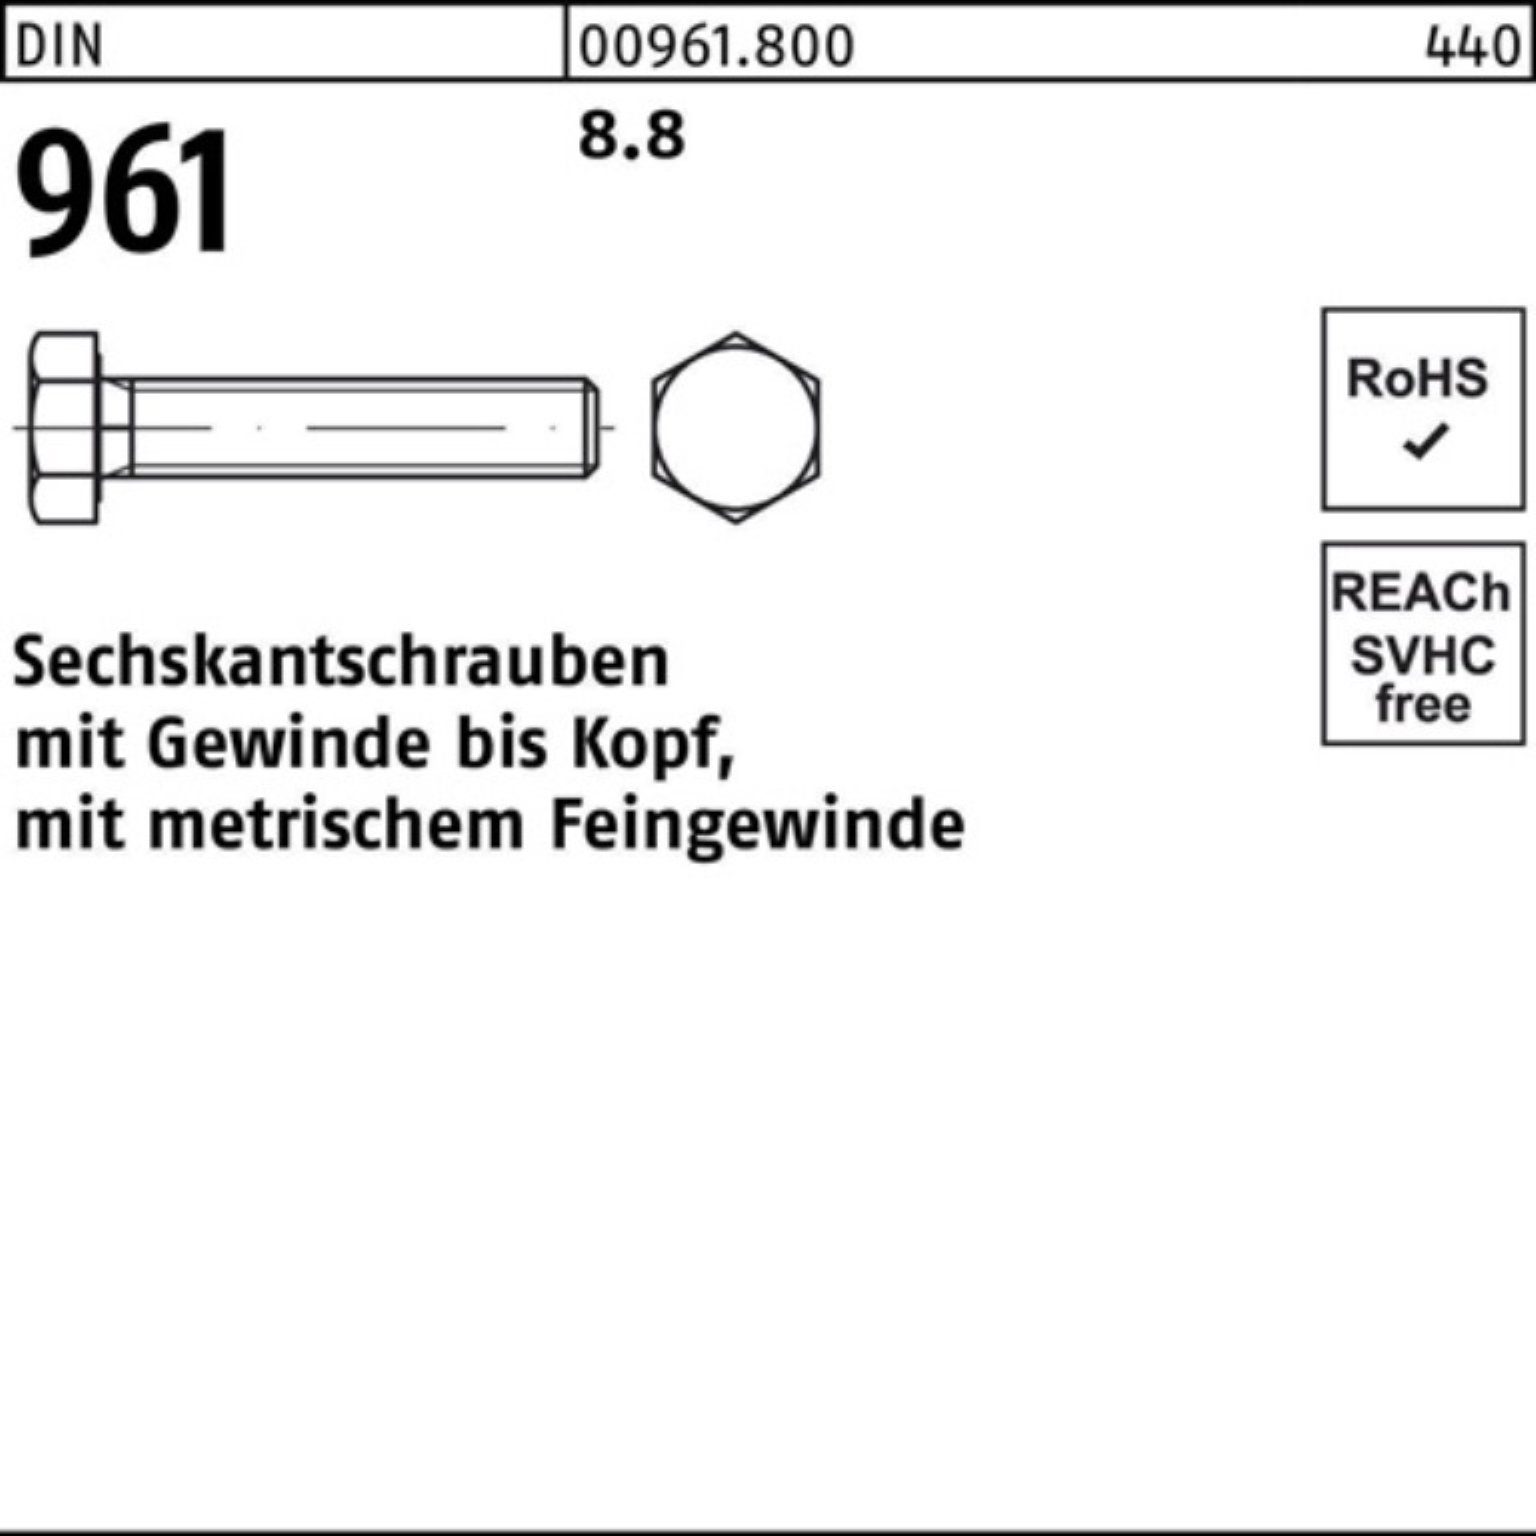 Sechskantschraube Sechskantschraube 100 9 DIN DIN VG Stück 100er Pack 8.8 Reyher 80 M10x1x 961